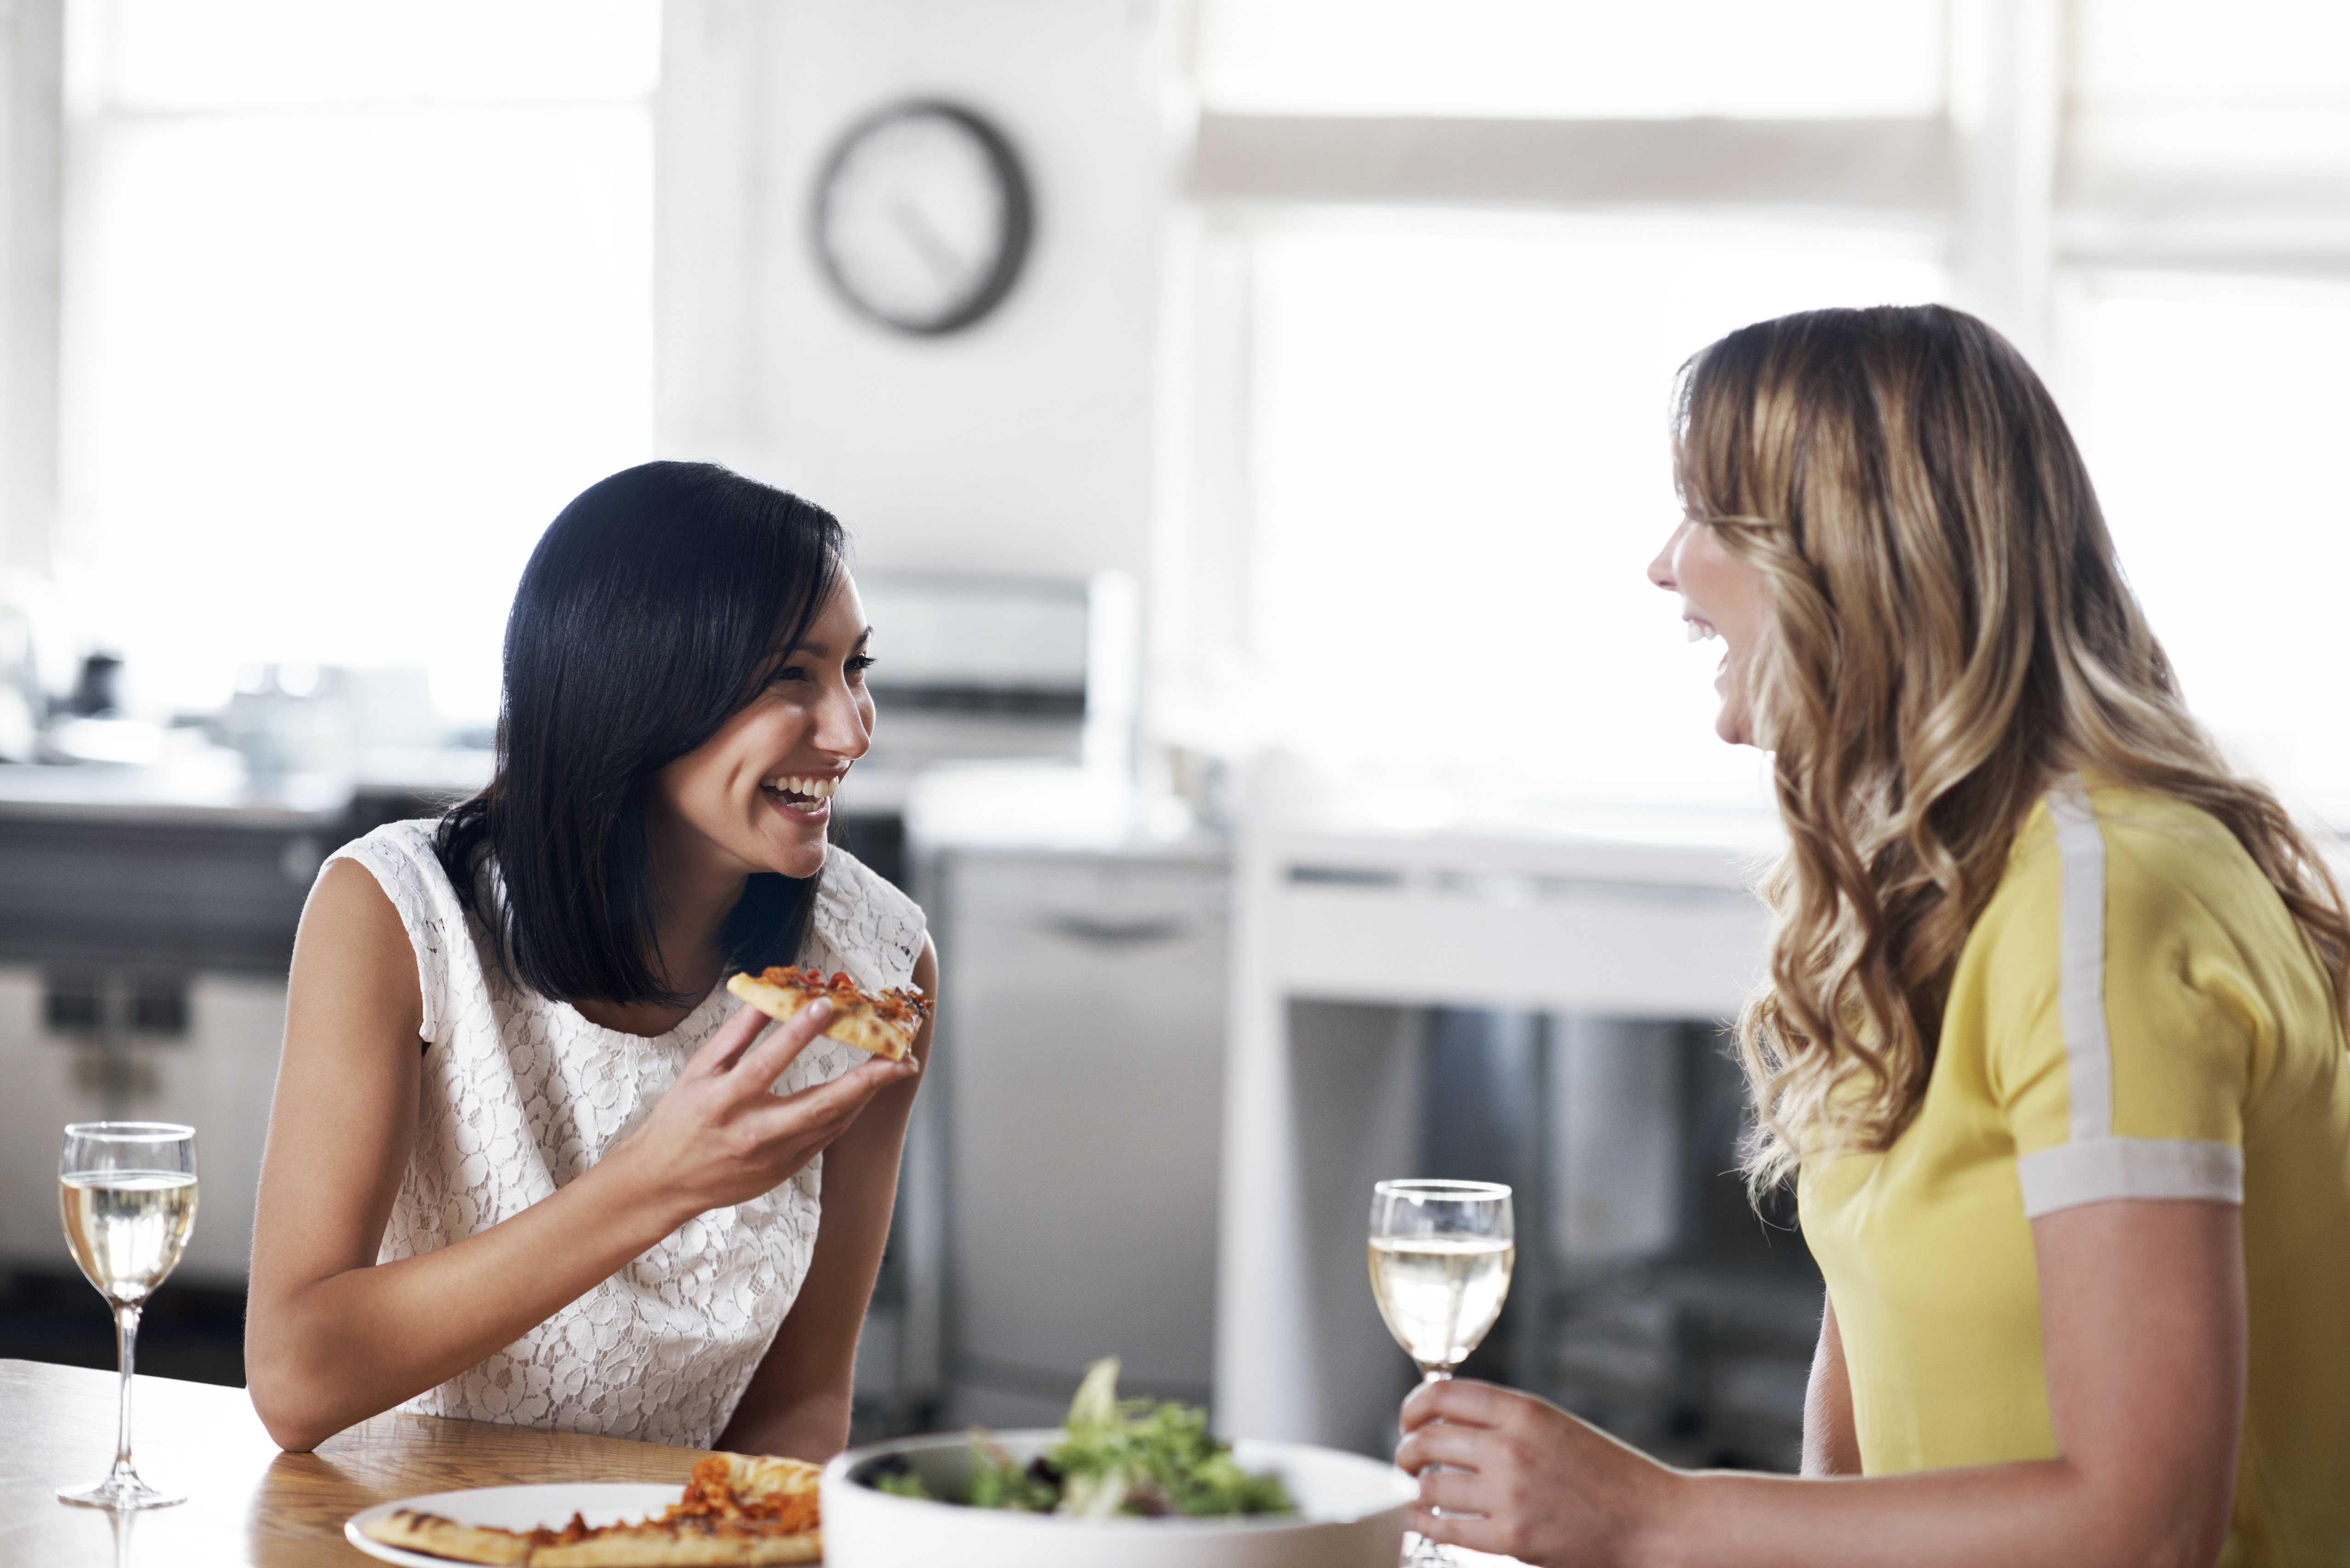 Femmes dînant ensemble | Source : Getty Images